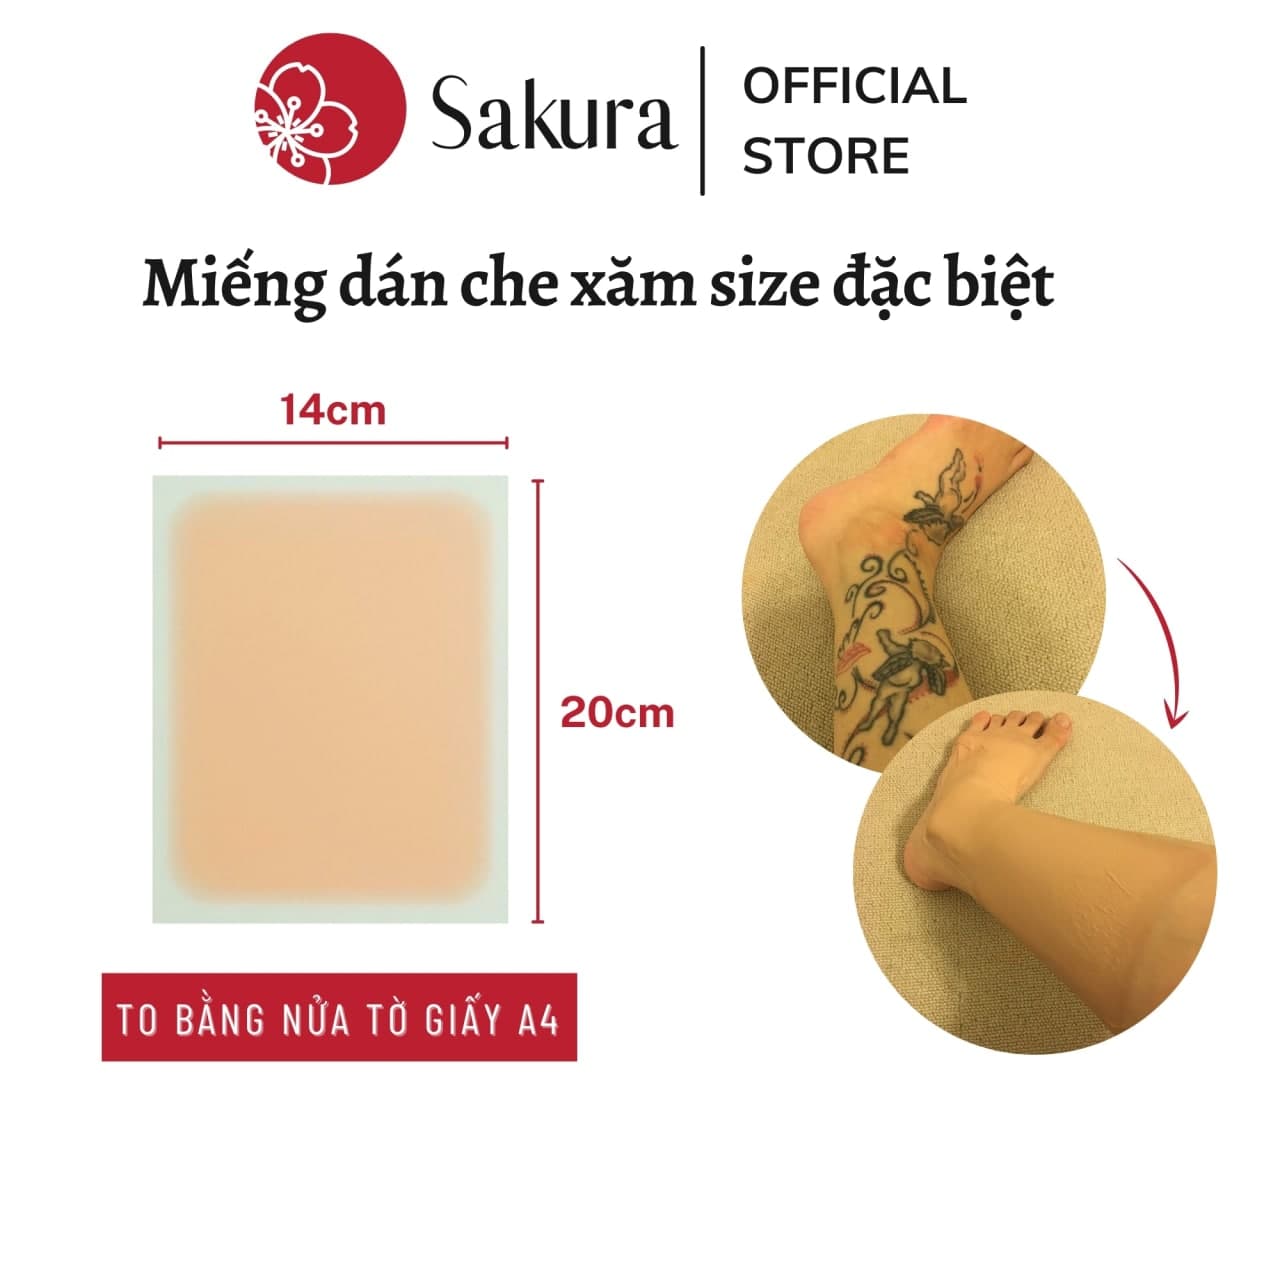 Miếng dán che hình xăm che sẹo xóa xăm Nhật Bản Sakura che khuyết điểm  nhiều màu da chống nước bám dính 35 ngày  Shopee Việt Nam